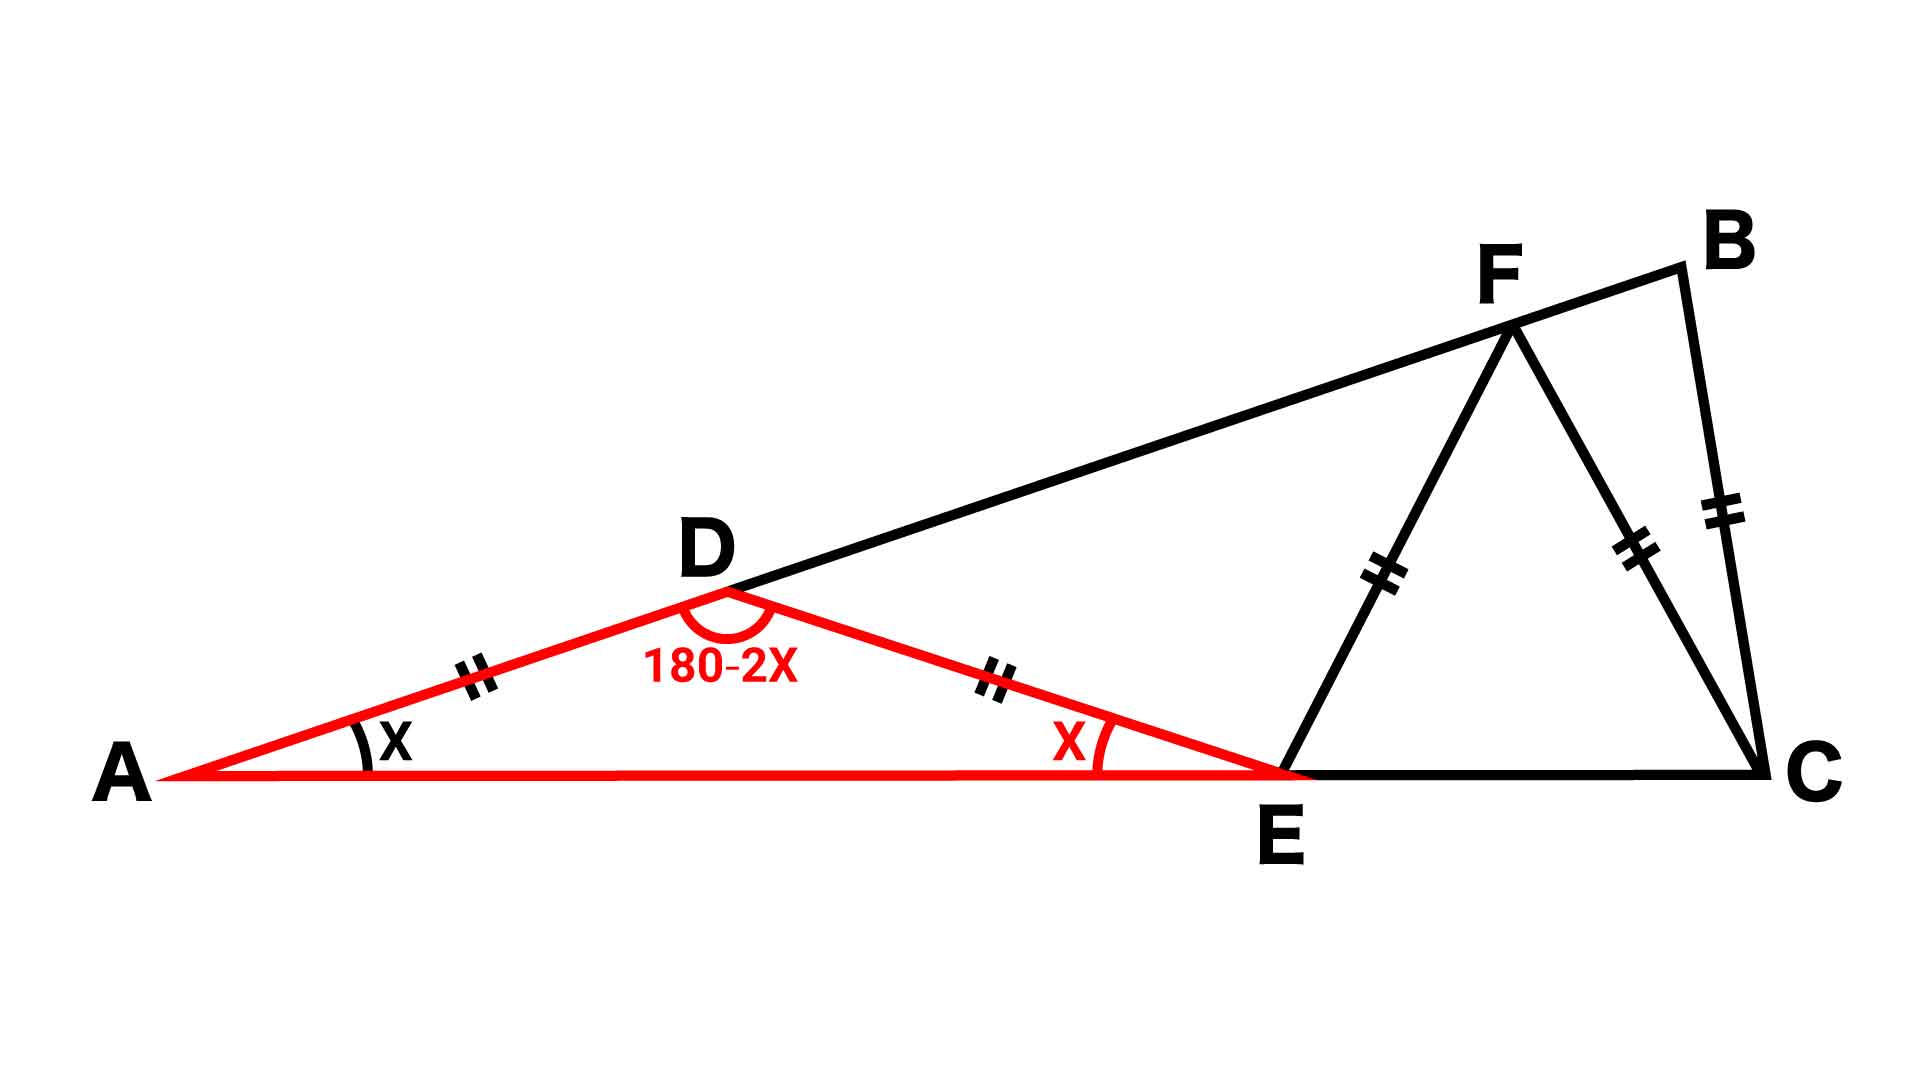 中学受験レベル 小学5年生で解ける 二等辺三角形 の問題に挑戦